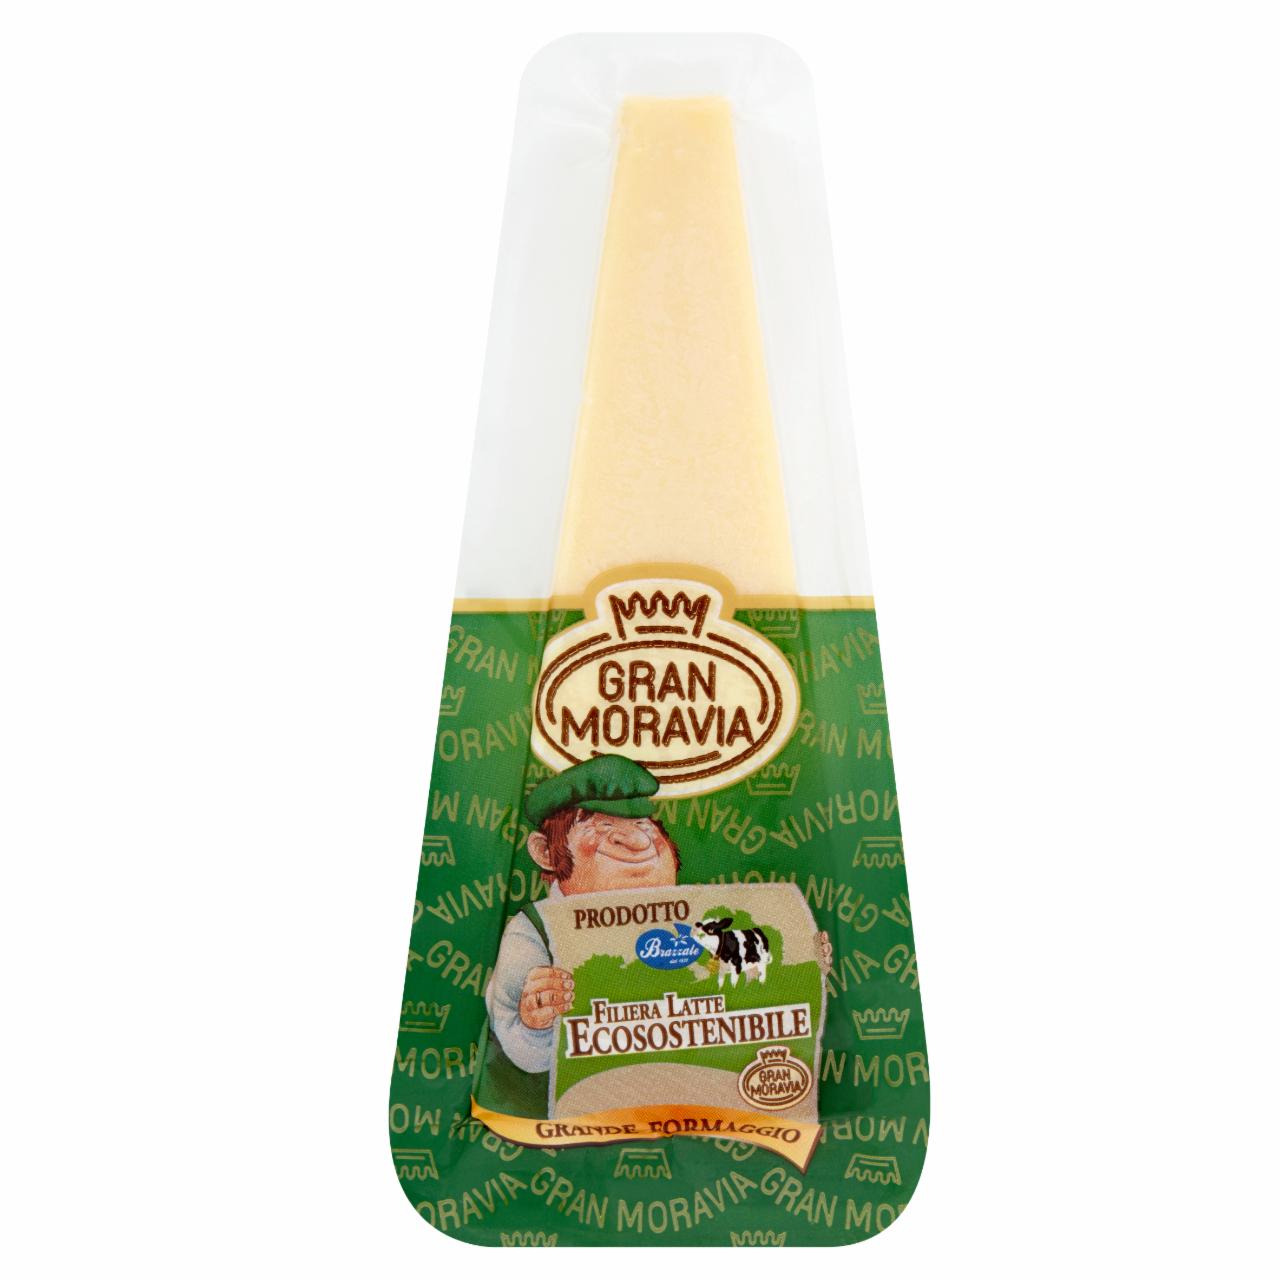 Képek - Gran Moravia félzsíros kemény sajt 200 g